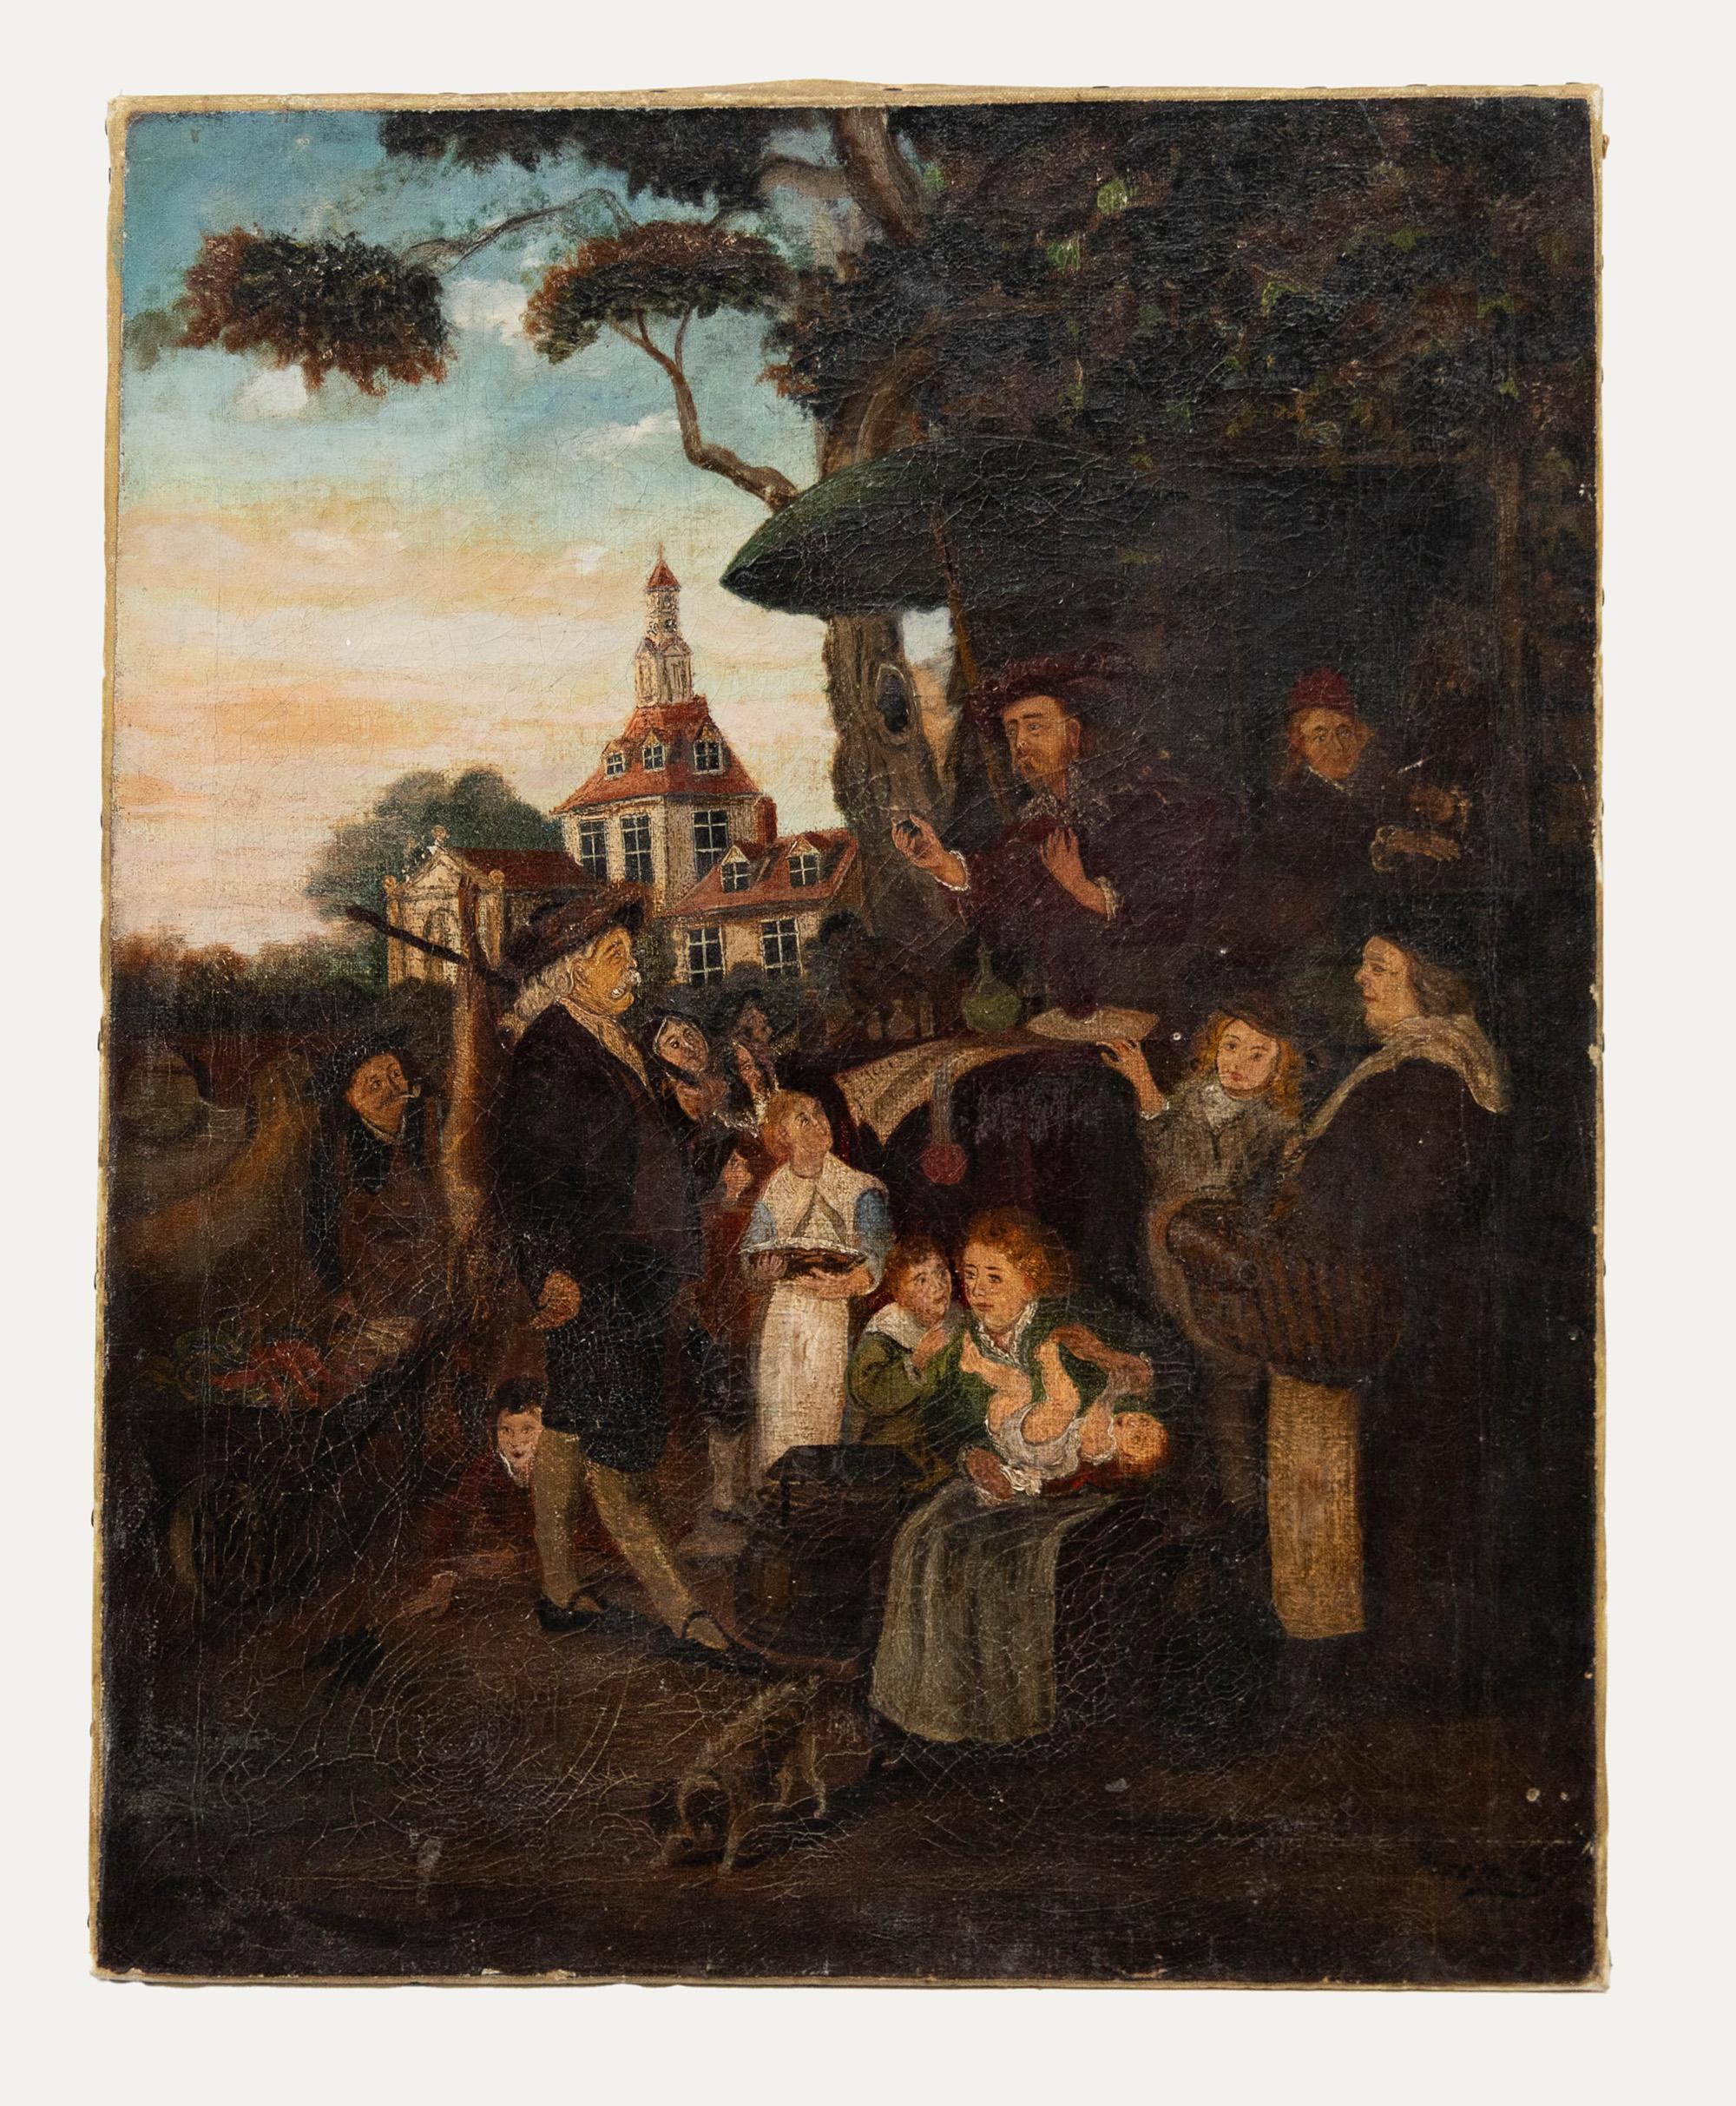 Huile du 19ème siècle - The Apothecary - Painting de Unknown